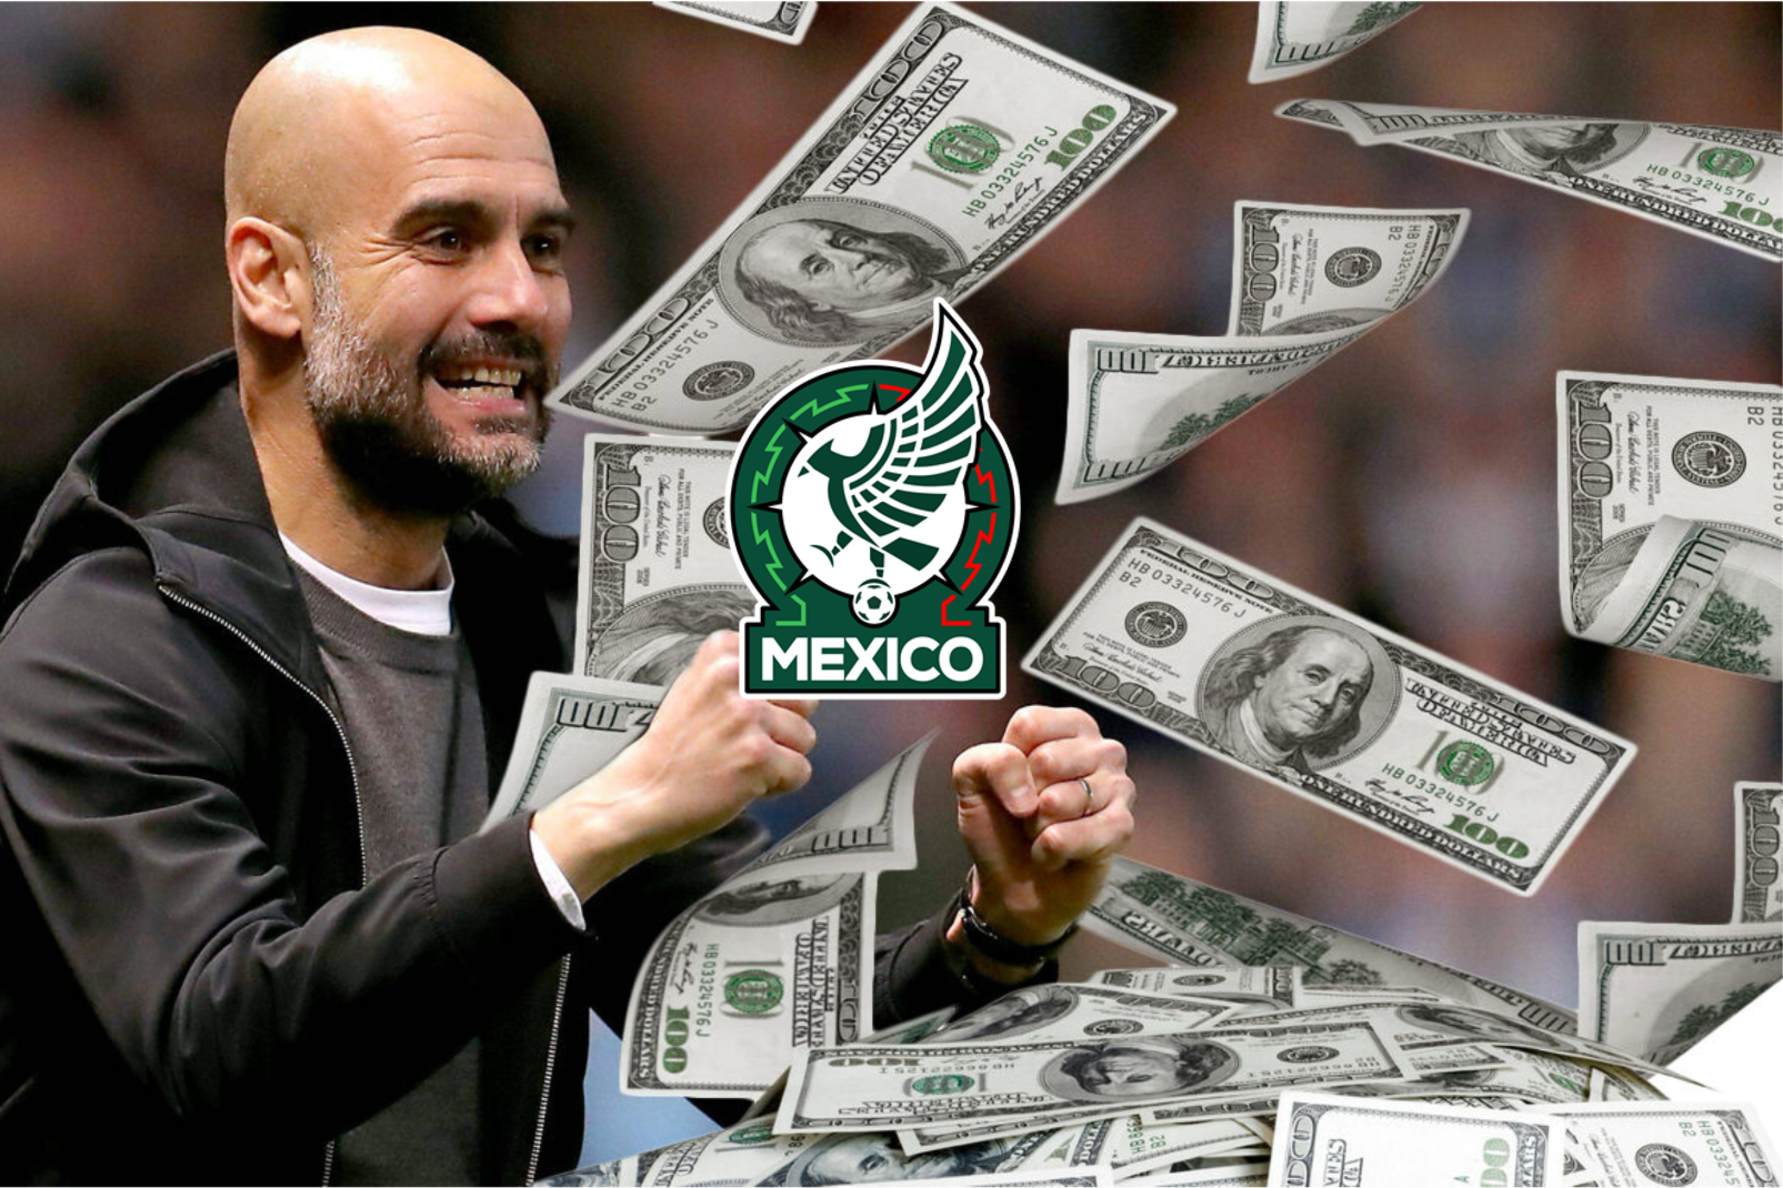 El jugador mexicano que tiene más dinero que Pep Guardiola, que tiene 37 títulos oficiales 